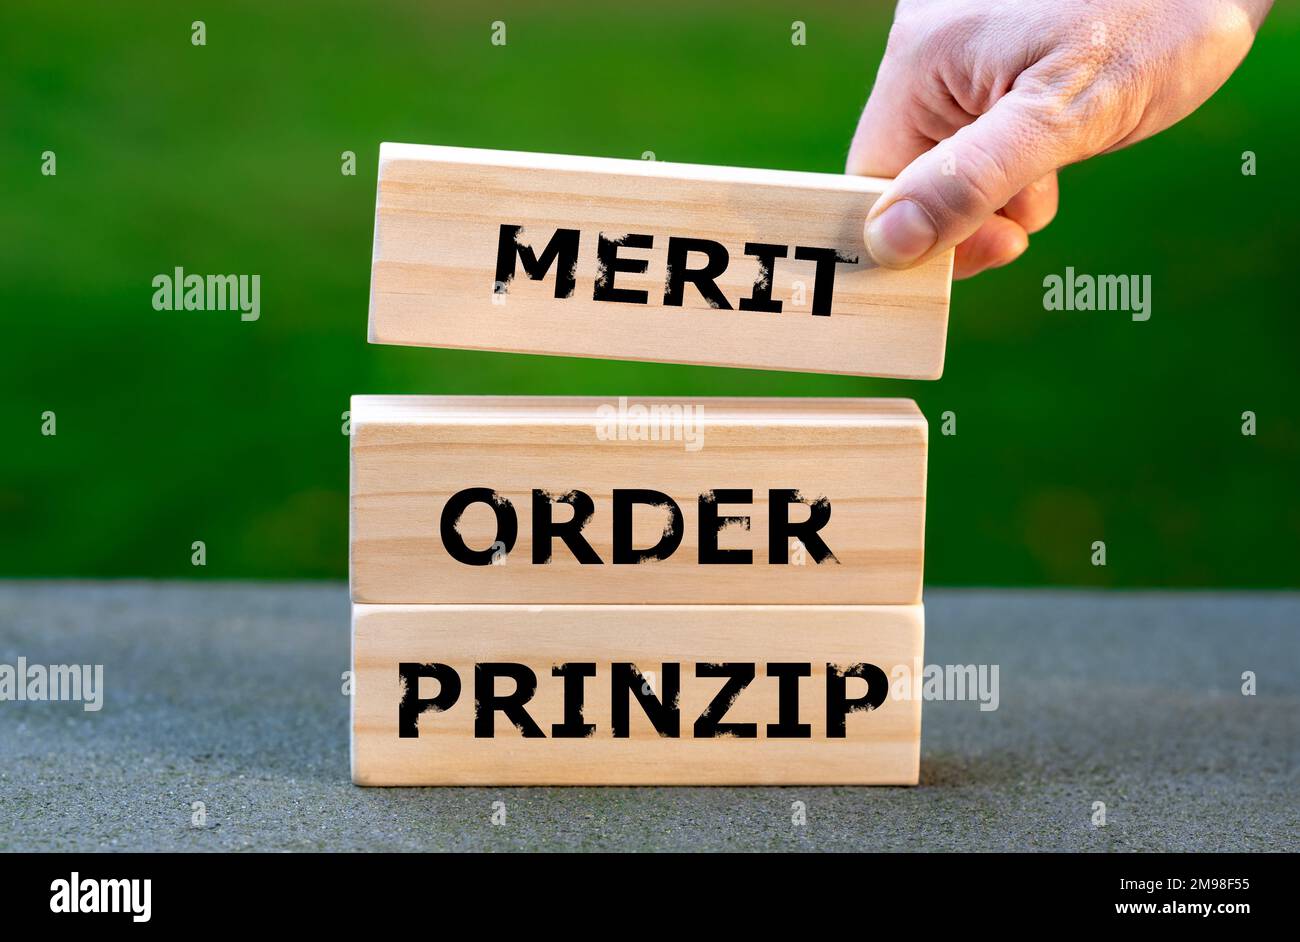 Les blocs forment l'expression allemande 'merit order prinzip' (ordre de mérite principal). Symbole du modèle déterminant le prix de l'électricité en Allemagne Banque D'Images